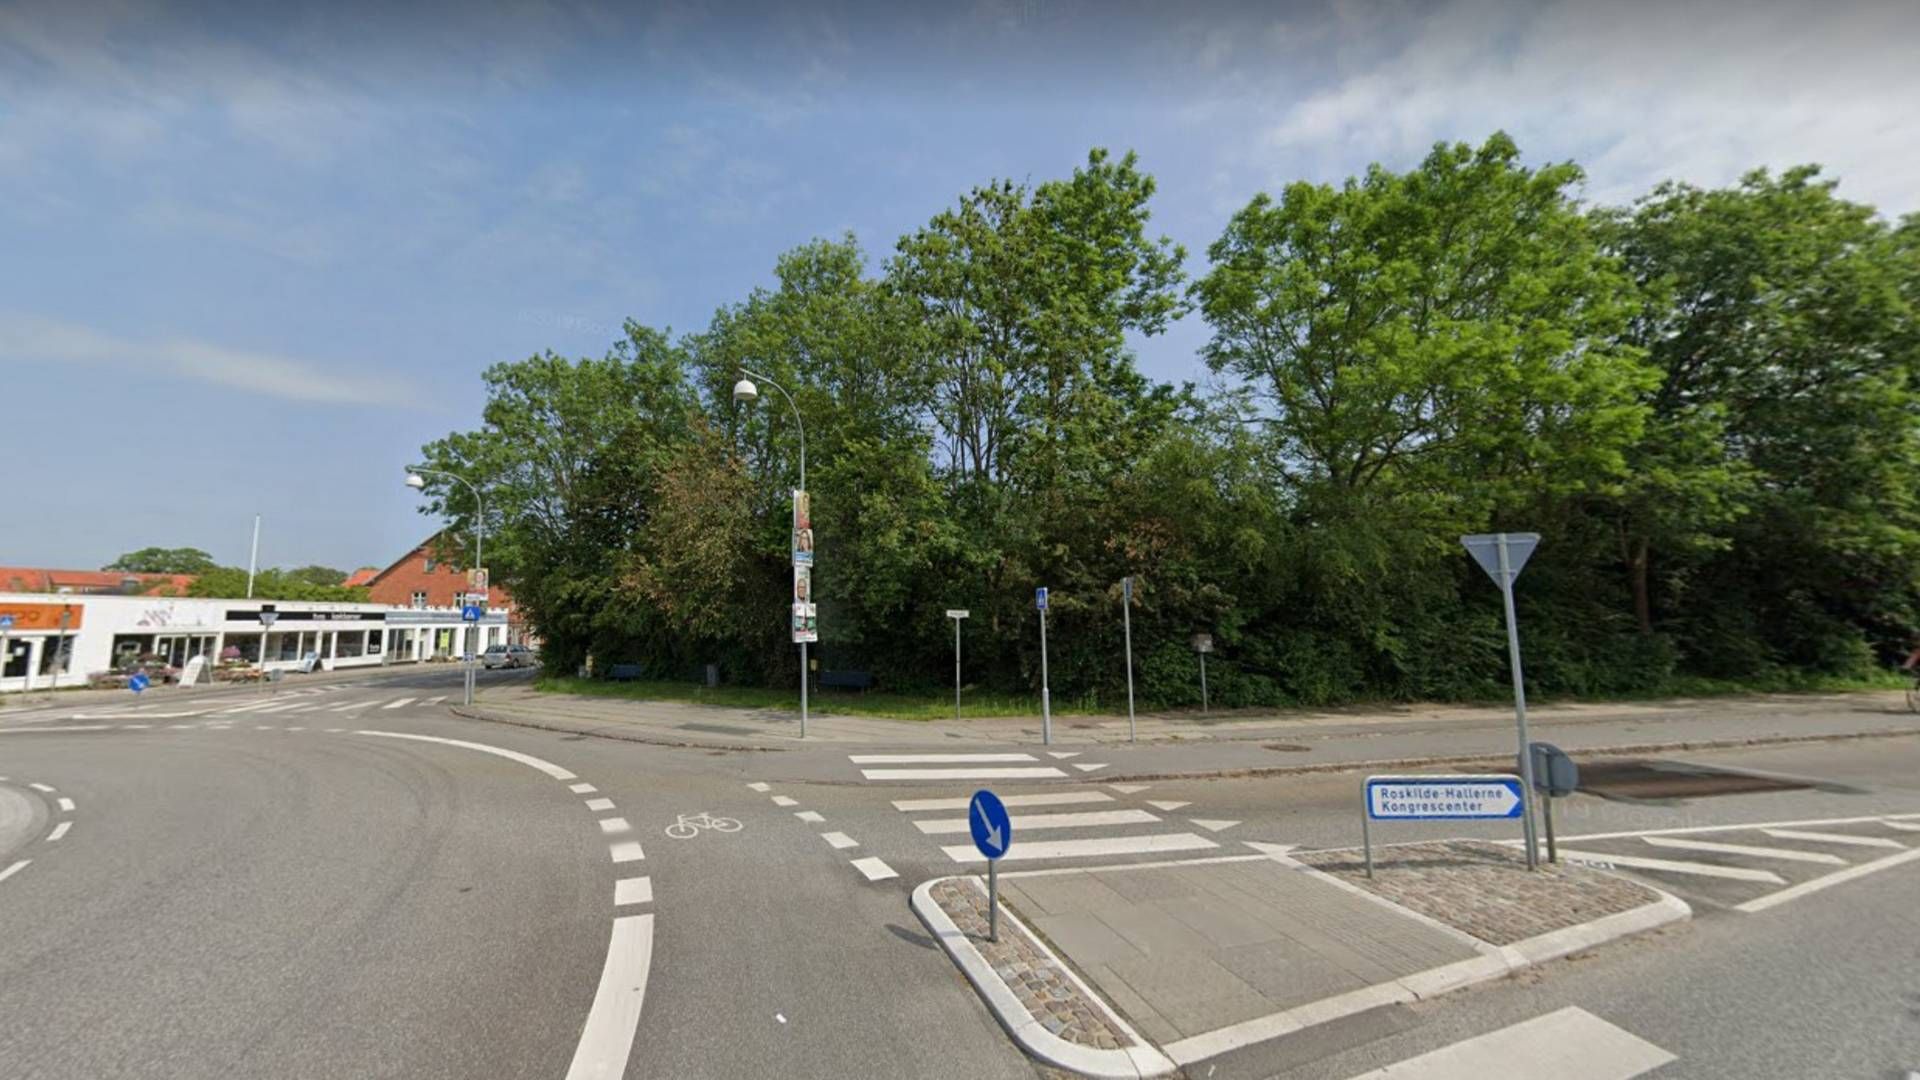 Boligerne skal opføres ved rundkørslen mellem Helligkorsvej og Møllehusvej i Roskilde. | Foto: Google Maps